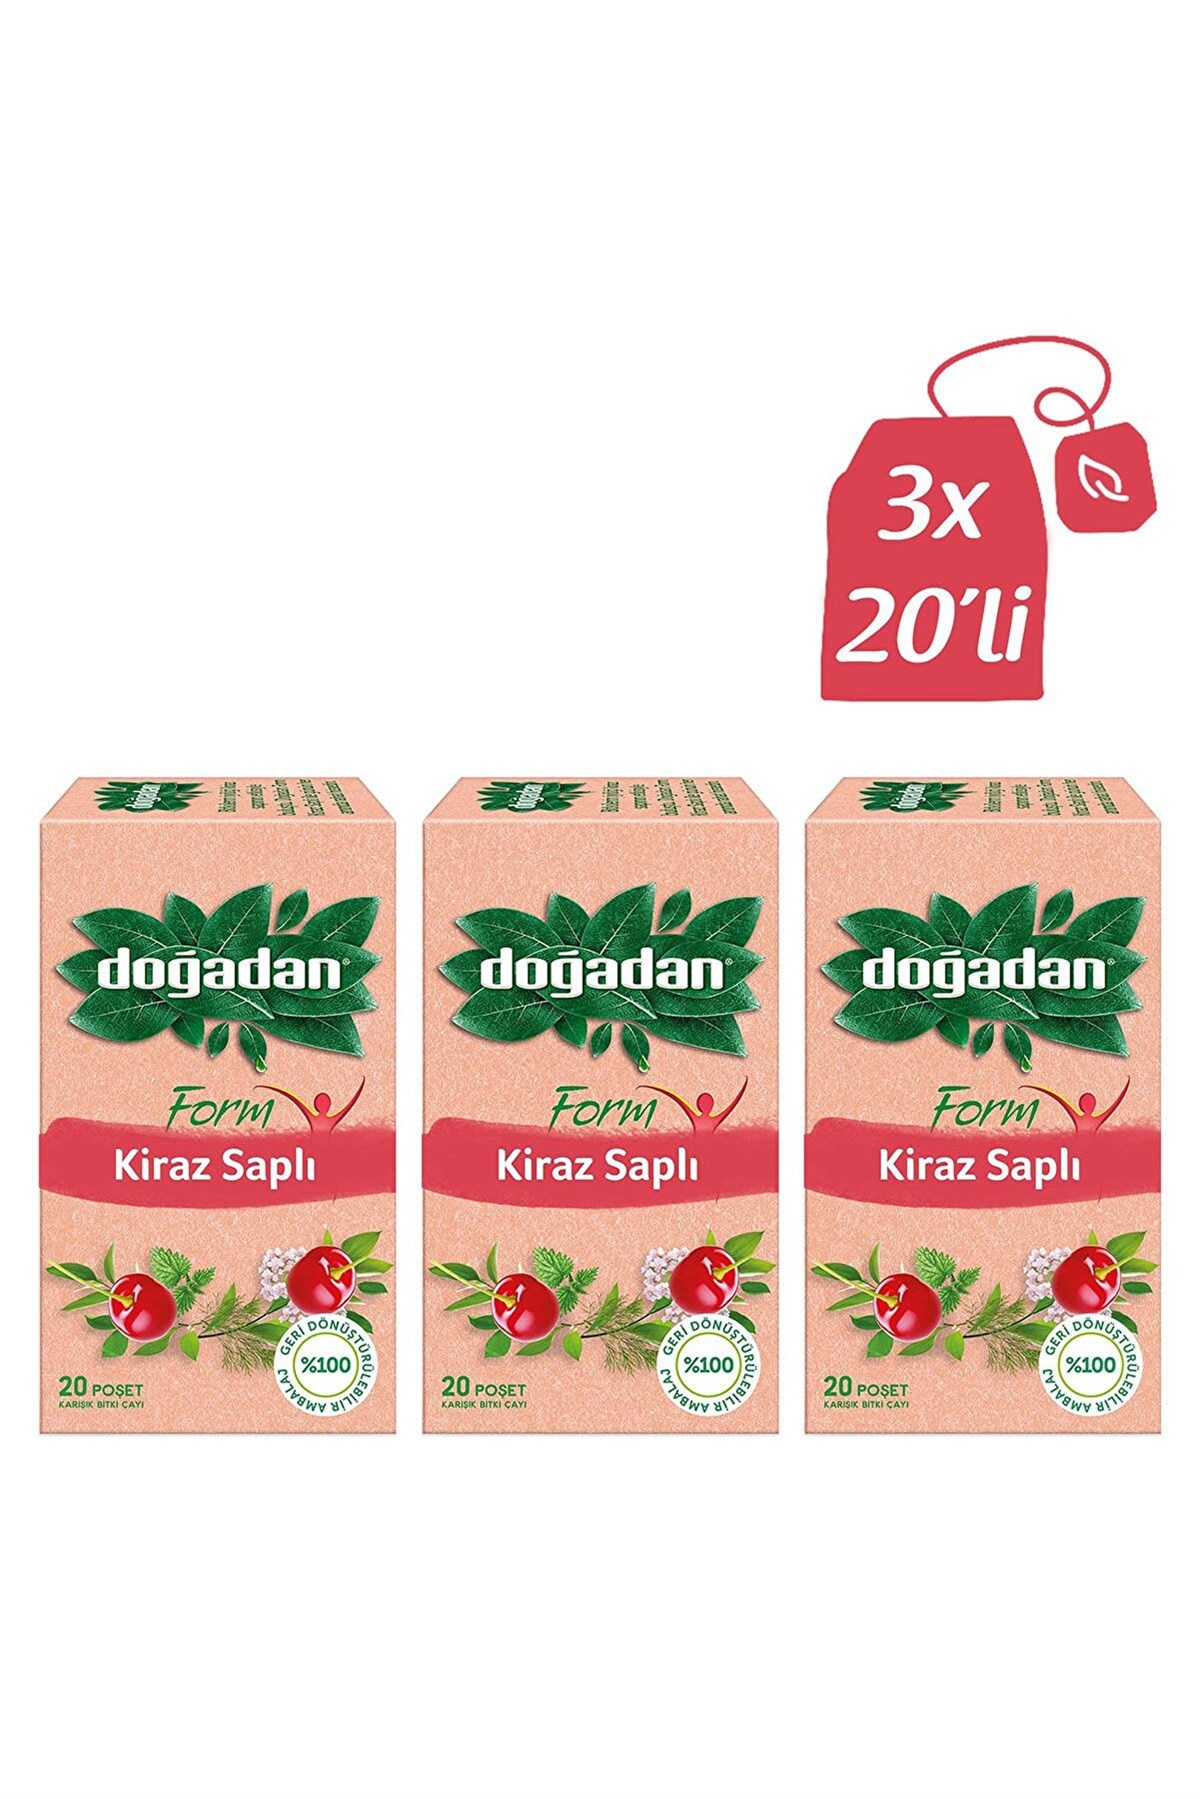 Doğadan Form Mixed Herbal Tea Bags With Cherry Stalk 20 Pieces |  turquoisebazaar.com